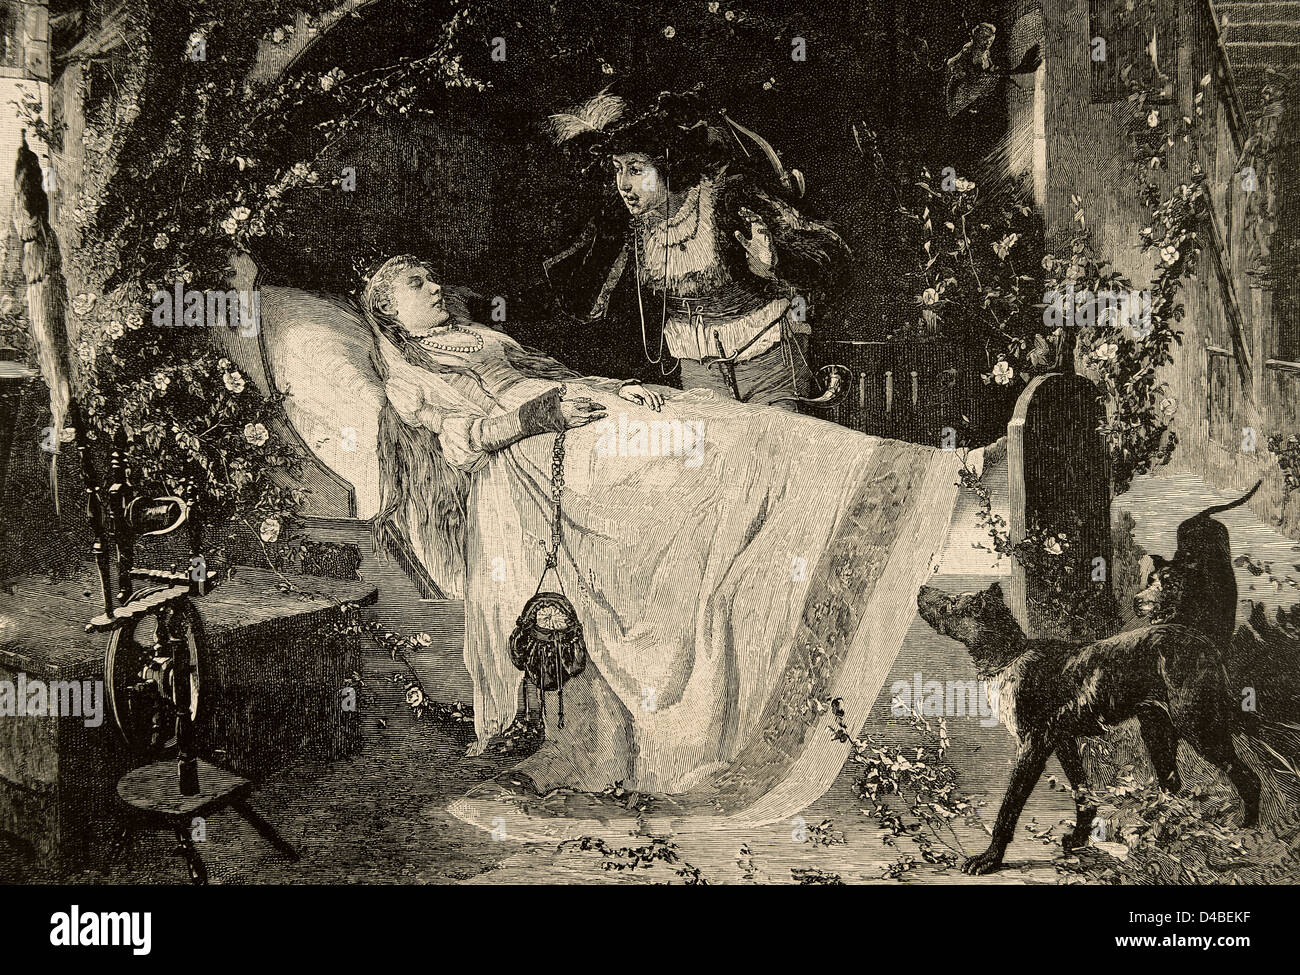 La bella addormentata. Il miracolo d'amore. L'incisione nell'illustrazione iberica, 1885. Foto Stock